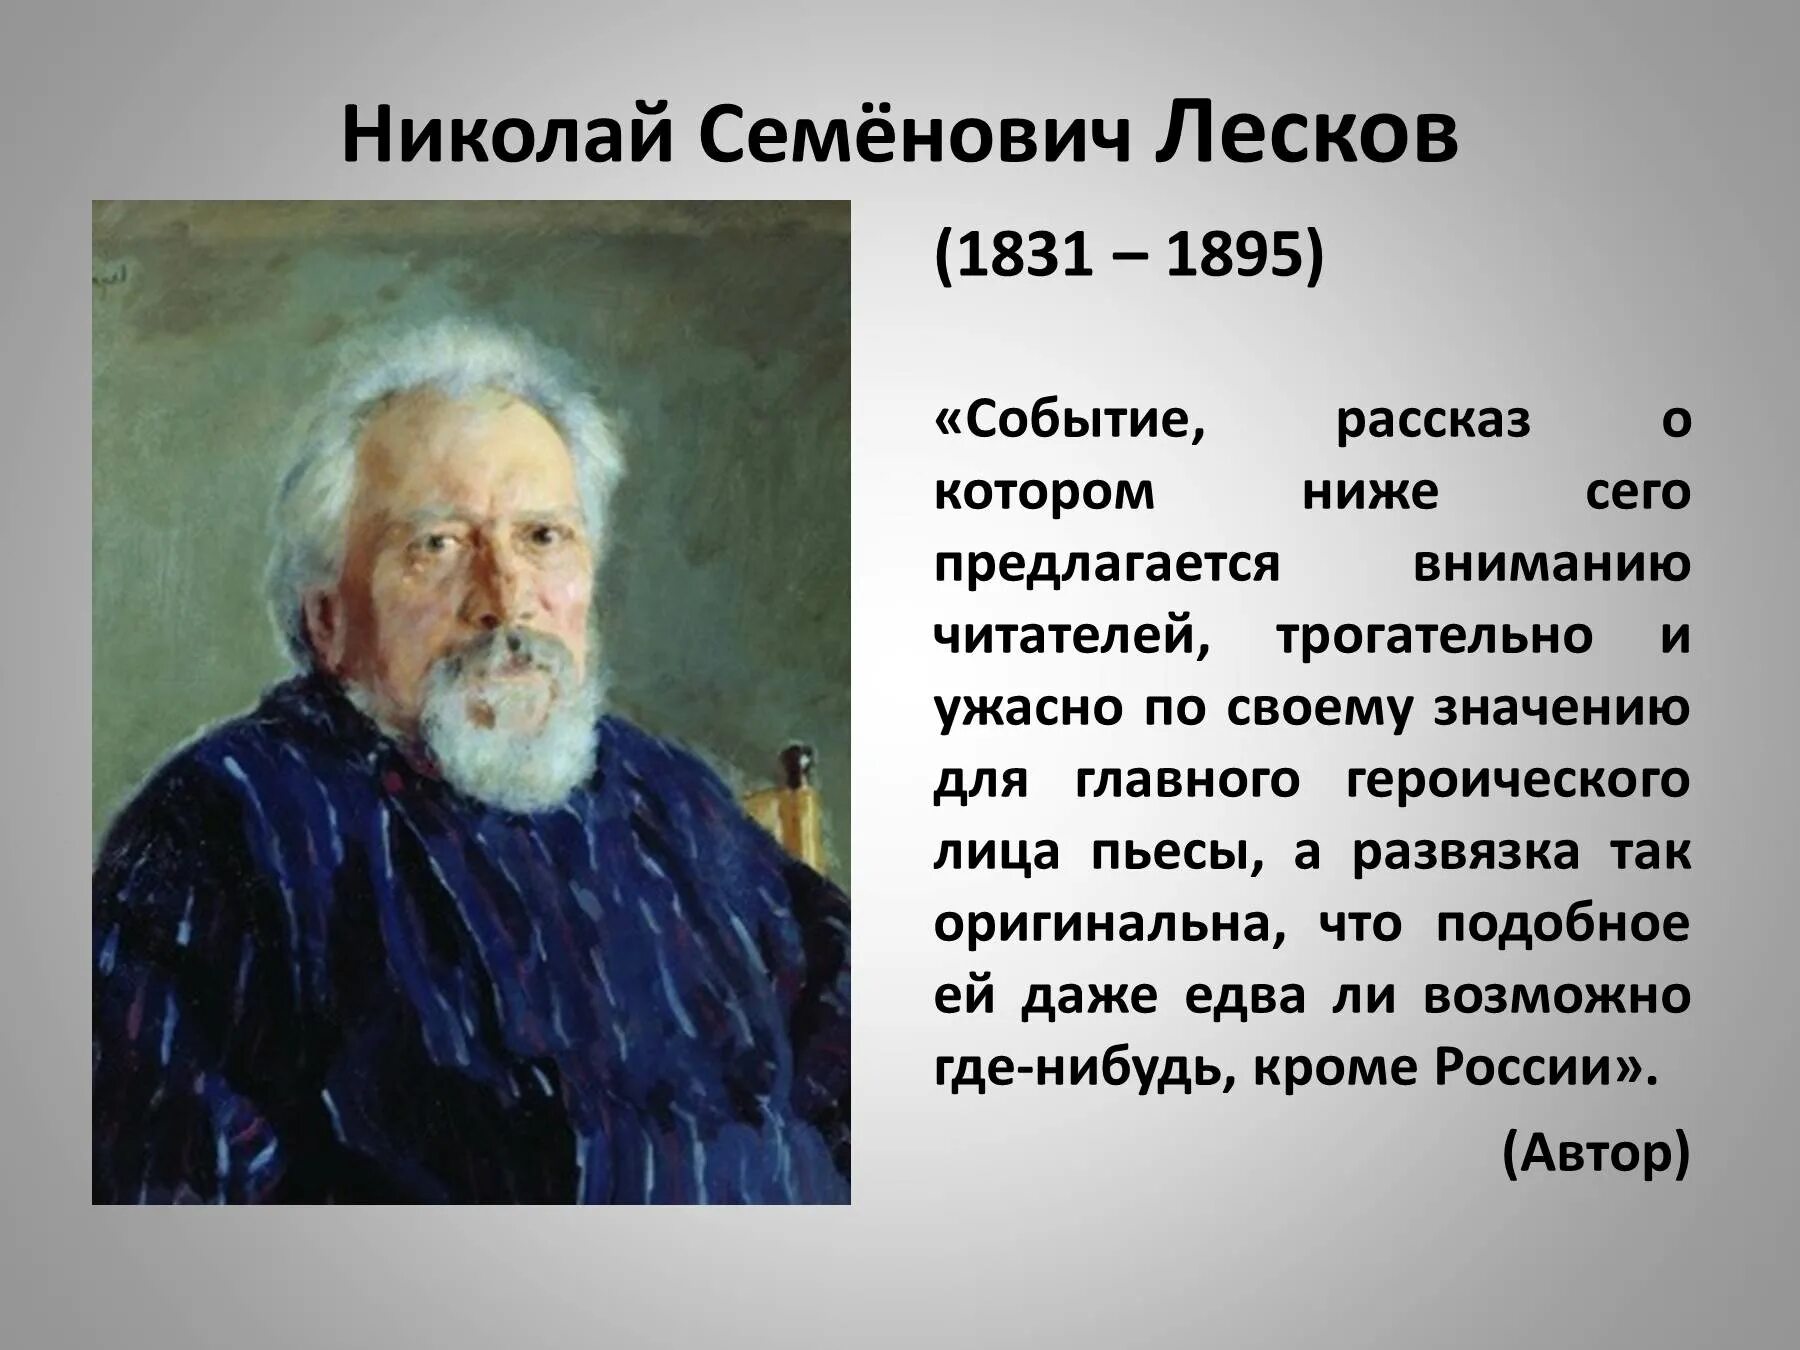 Рассказ событие читать. История Николая Семёнович Лескова 1831 - 1895.